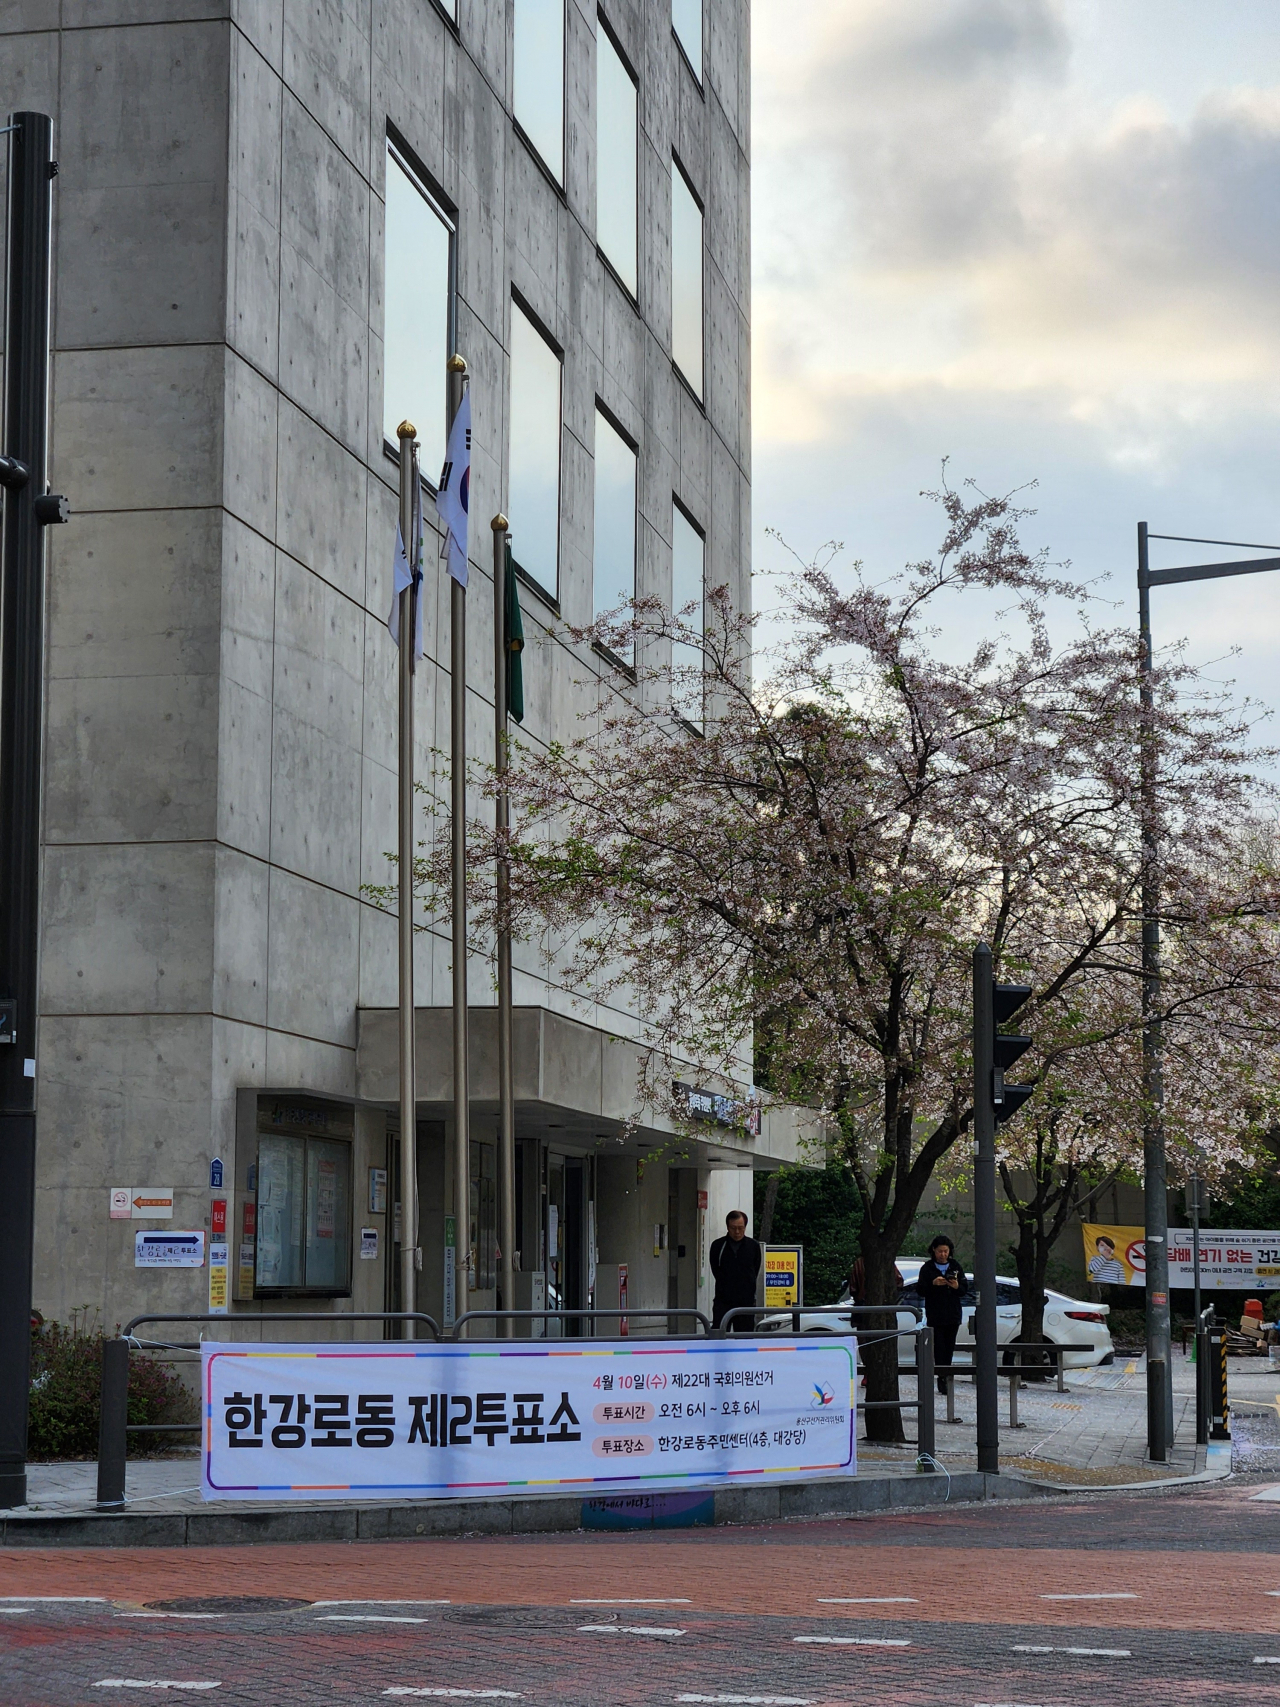 Hangangro-dong 2nd polling station in Yongsan-gu, Seoul (Song Seung-hyun/The Korea Herald)